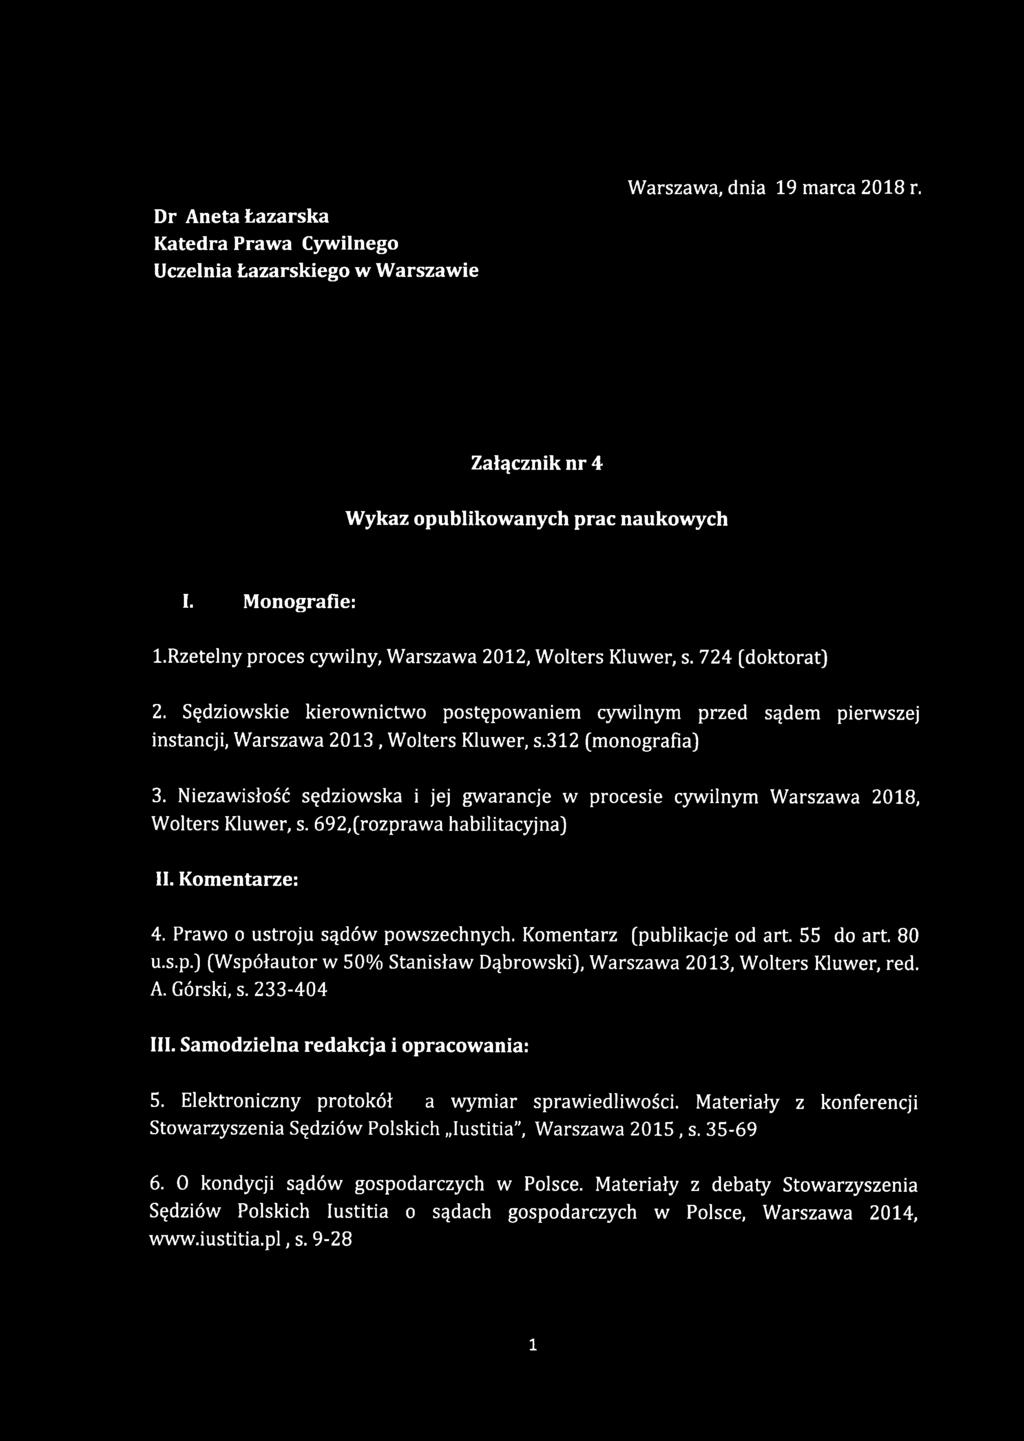 Komentarz (publikacje od art. 55 do art. 80 u.s.p.) (Współautor w 50% Stanisław Dąbrowski), Warszawa 2013, Wolters Kluwer, red. A. Górski, s. 233-404 III.